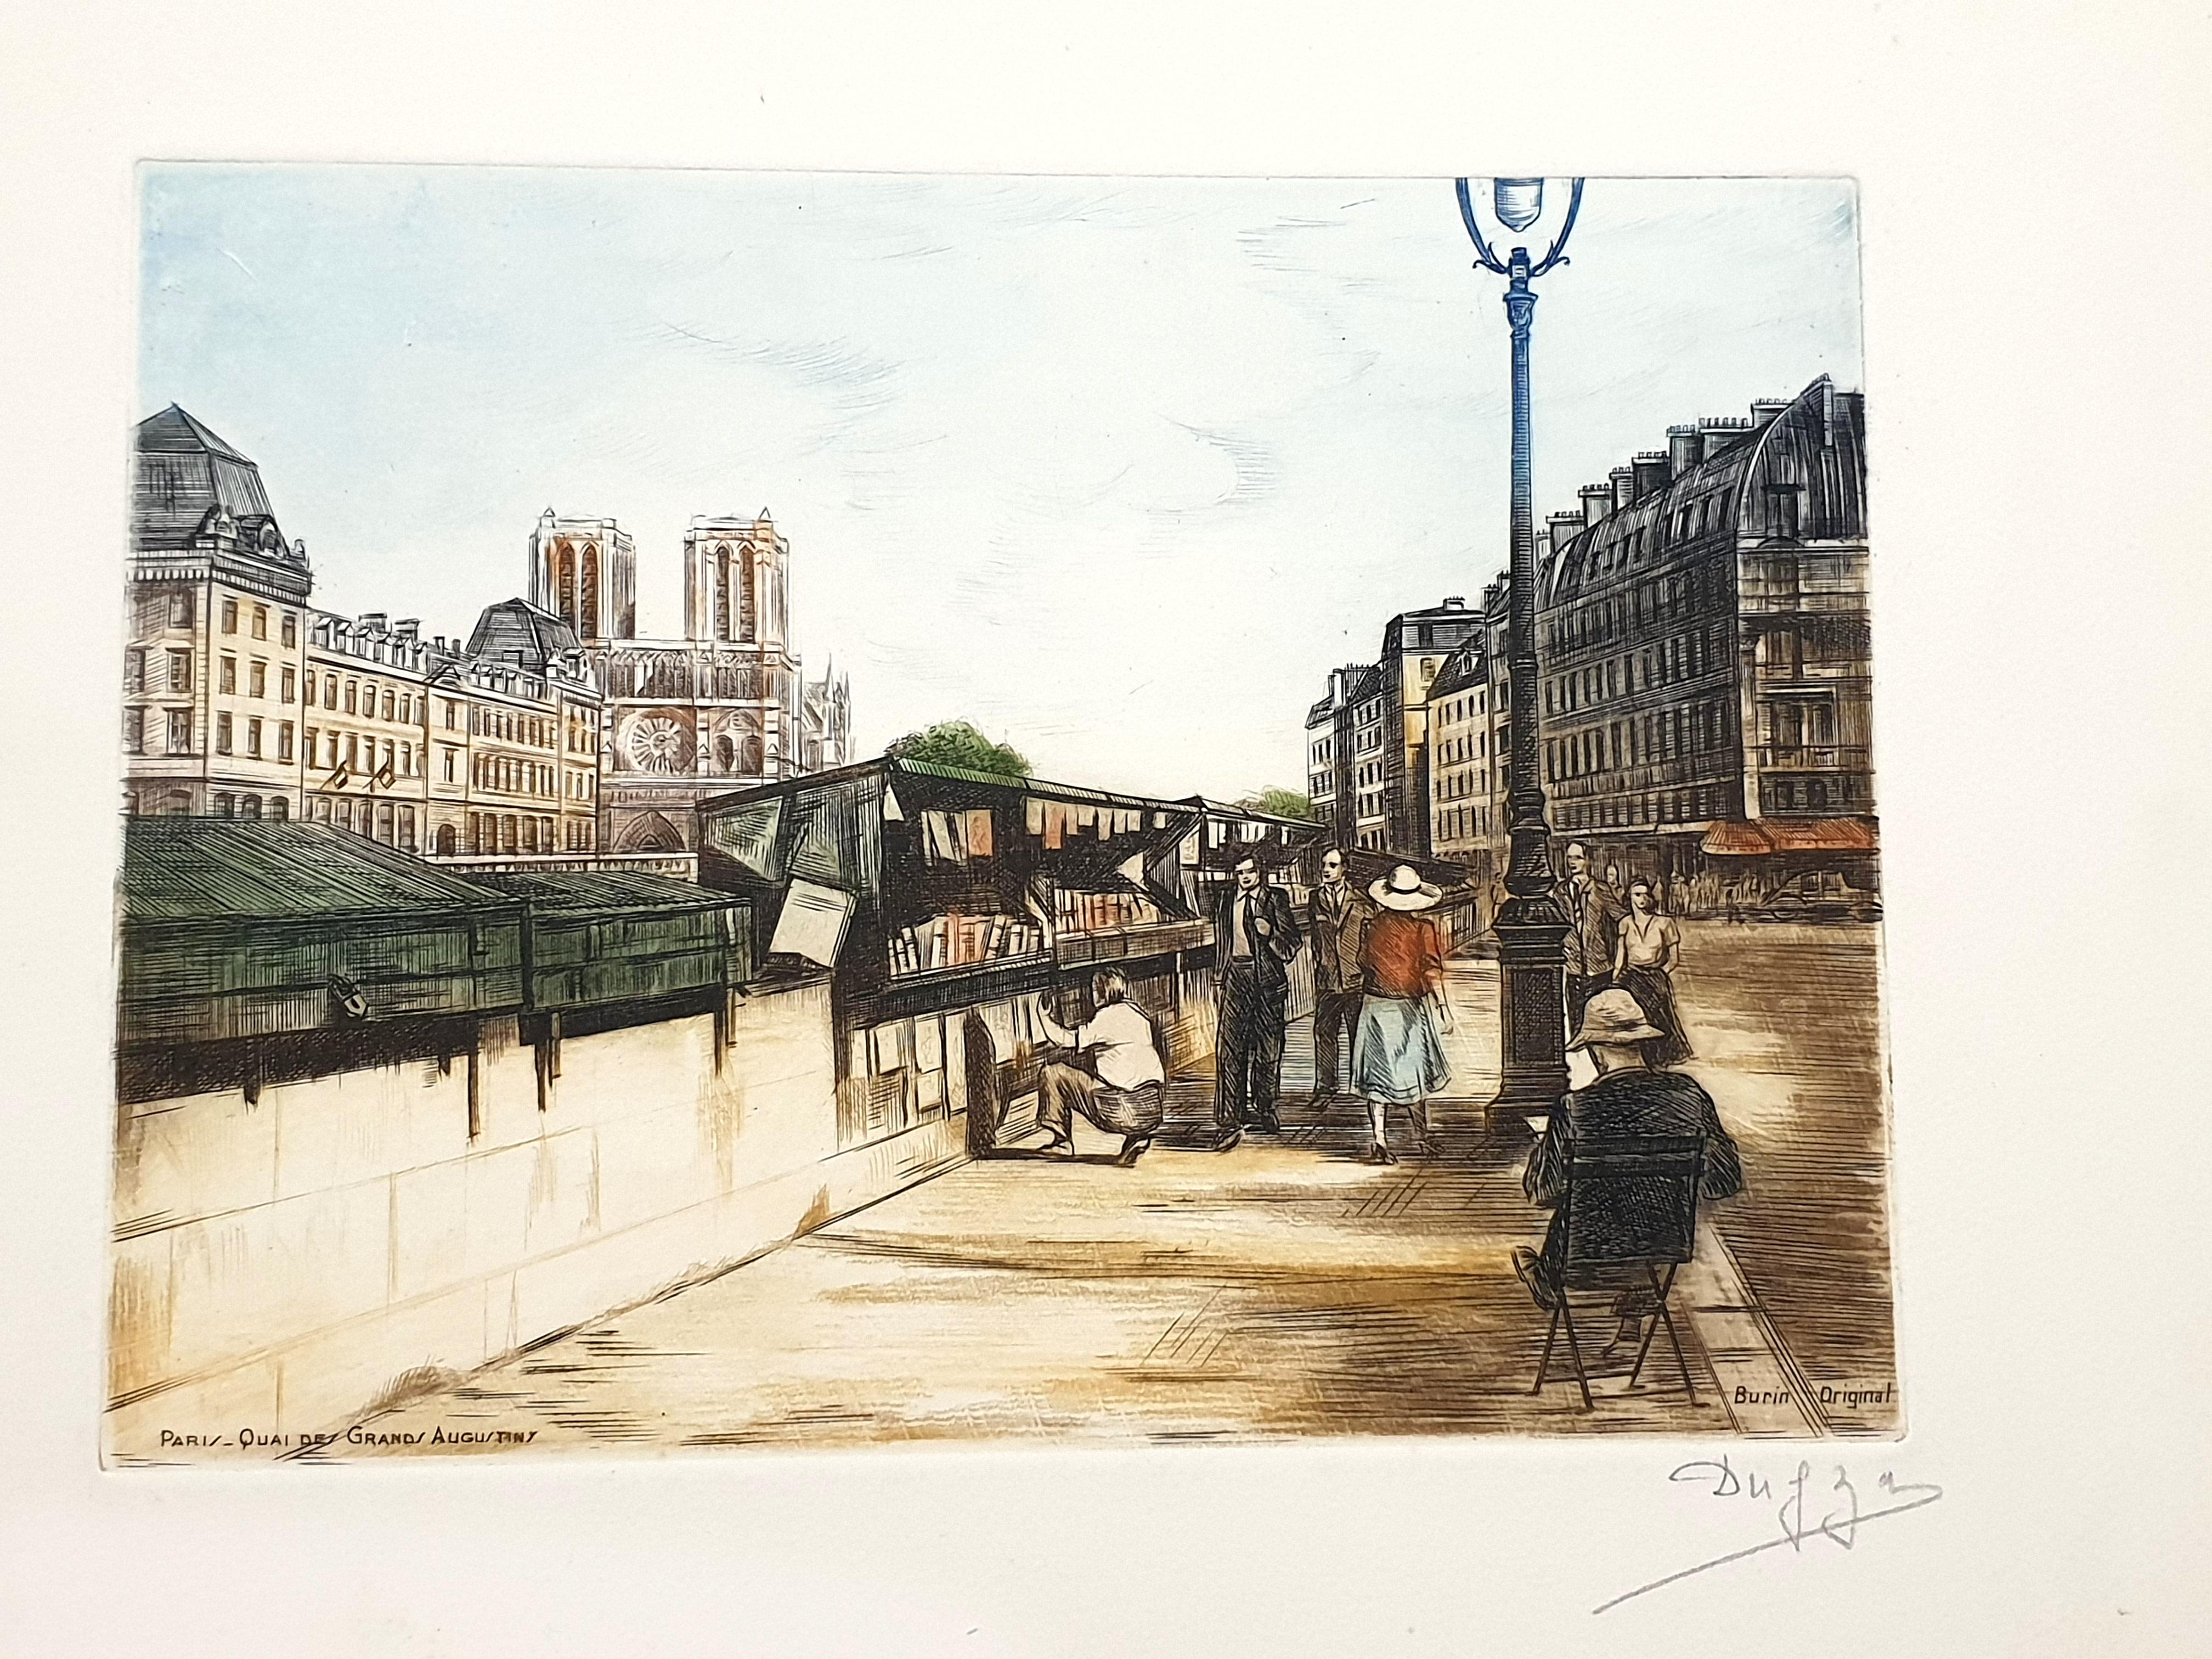 Dufza - Paris - Quai des Grands Augustins - Original Handsignierte Radierung
Um 1940
Handsigniert mit Bleistift
Abmessungen: 20 x 25 cm 